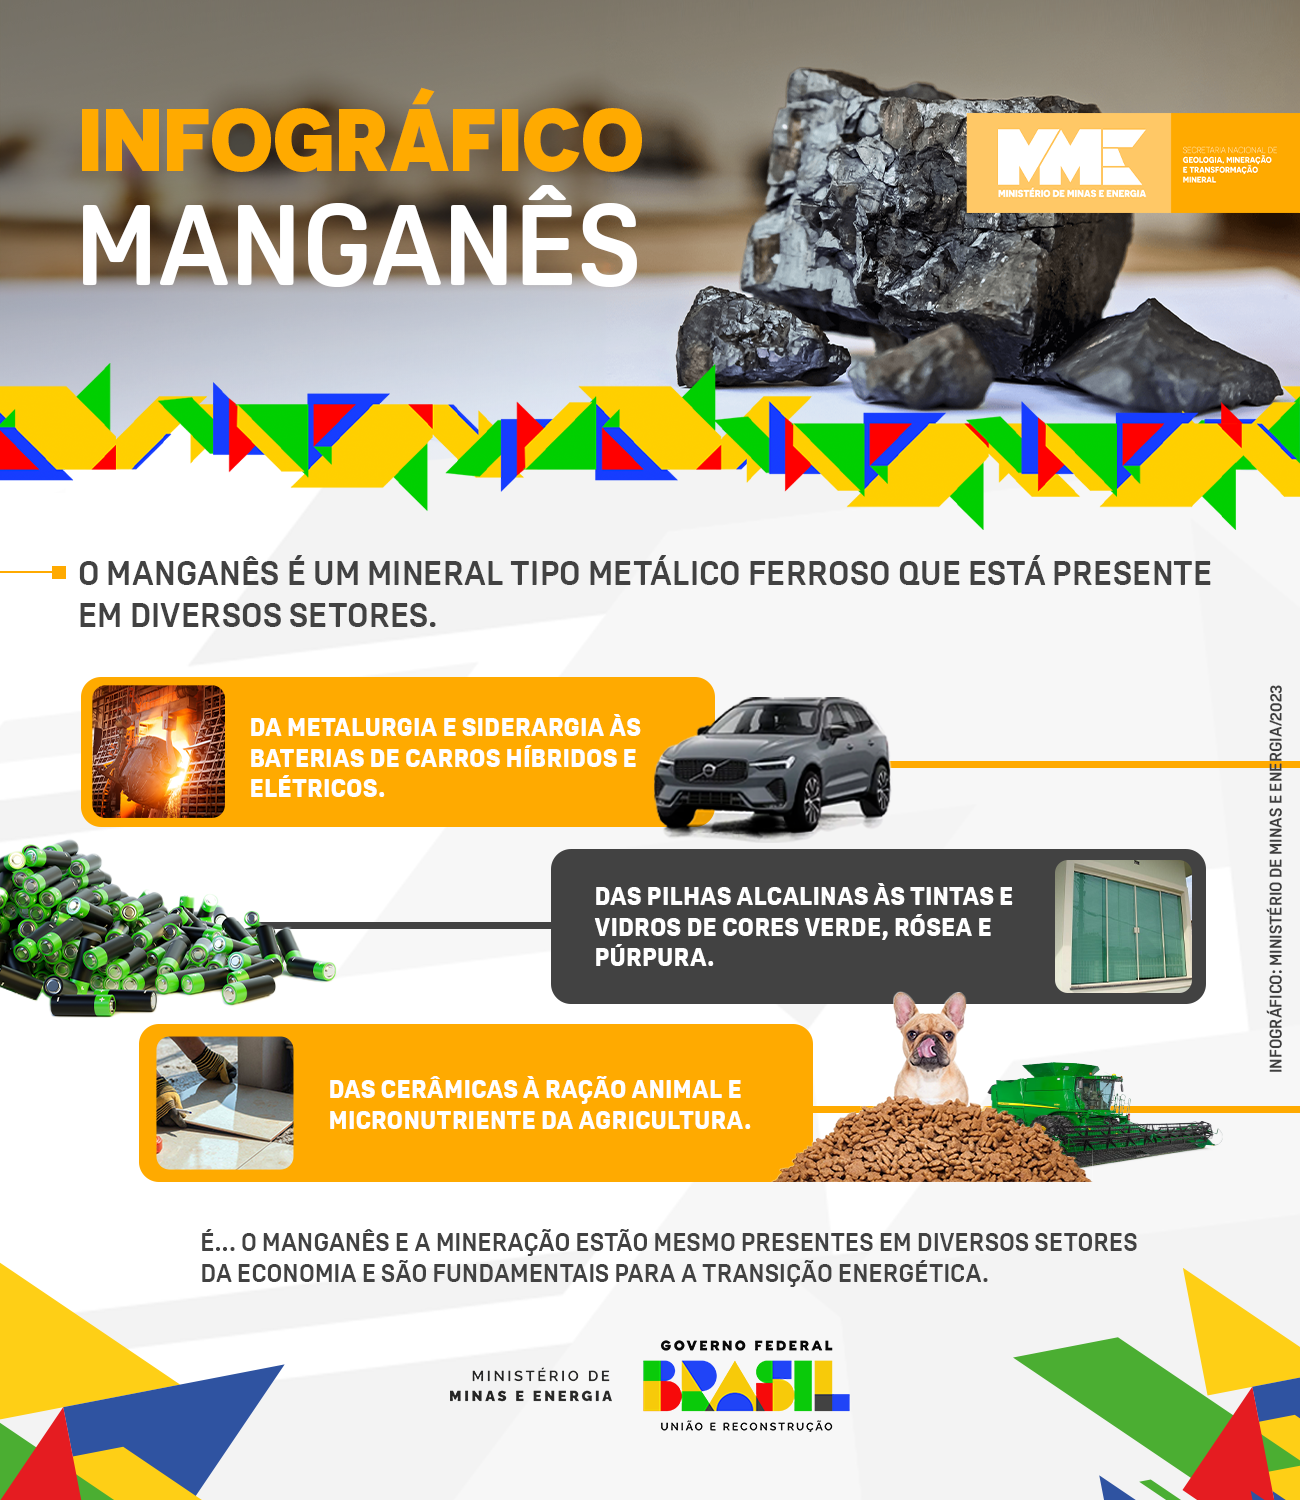 Quarto metal mais usado no mundo, o manganês é mais um mineral considerado estratégico para o Brasil